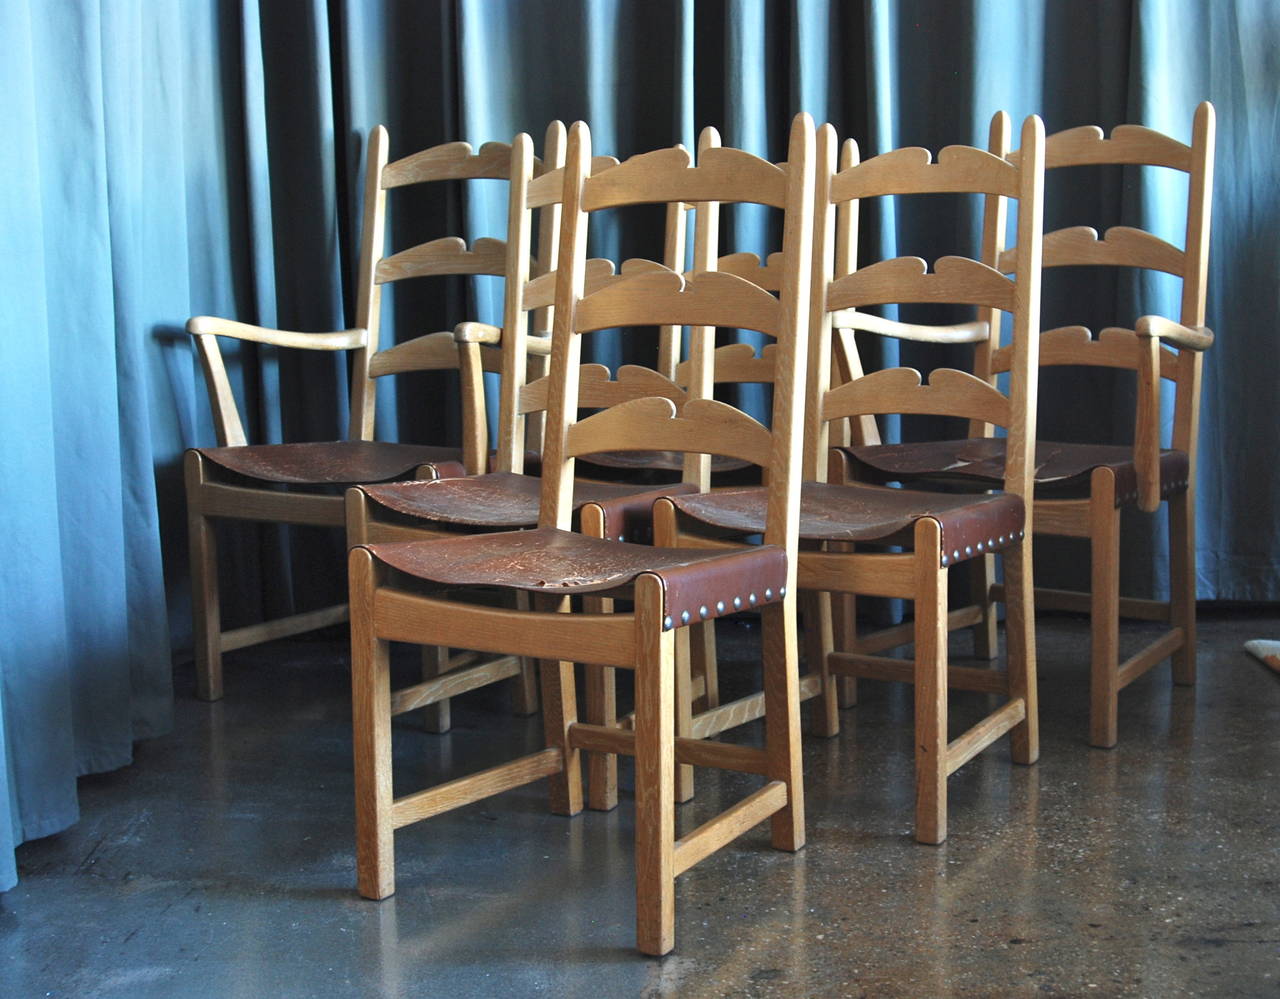 Un ensemble de salle à manger de six chaises par Axel Einar Hjorth, Suède, vers 1940.
Chêne cérusé avec sièges en cuir.
Marqué : AE Hjorth.
Cadre en bois en parfait état vintage. Sièges en cuir d'origine fortement endommagés.